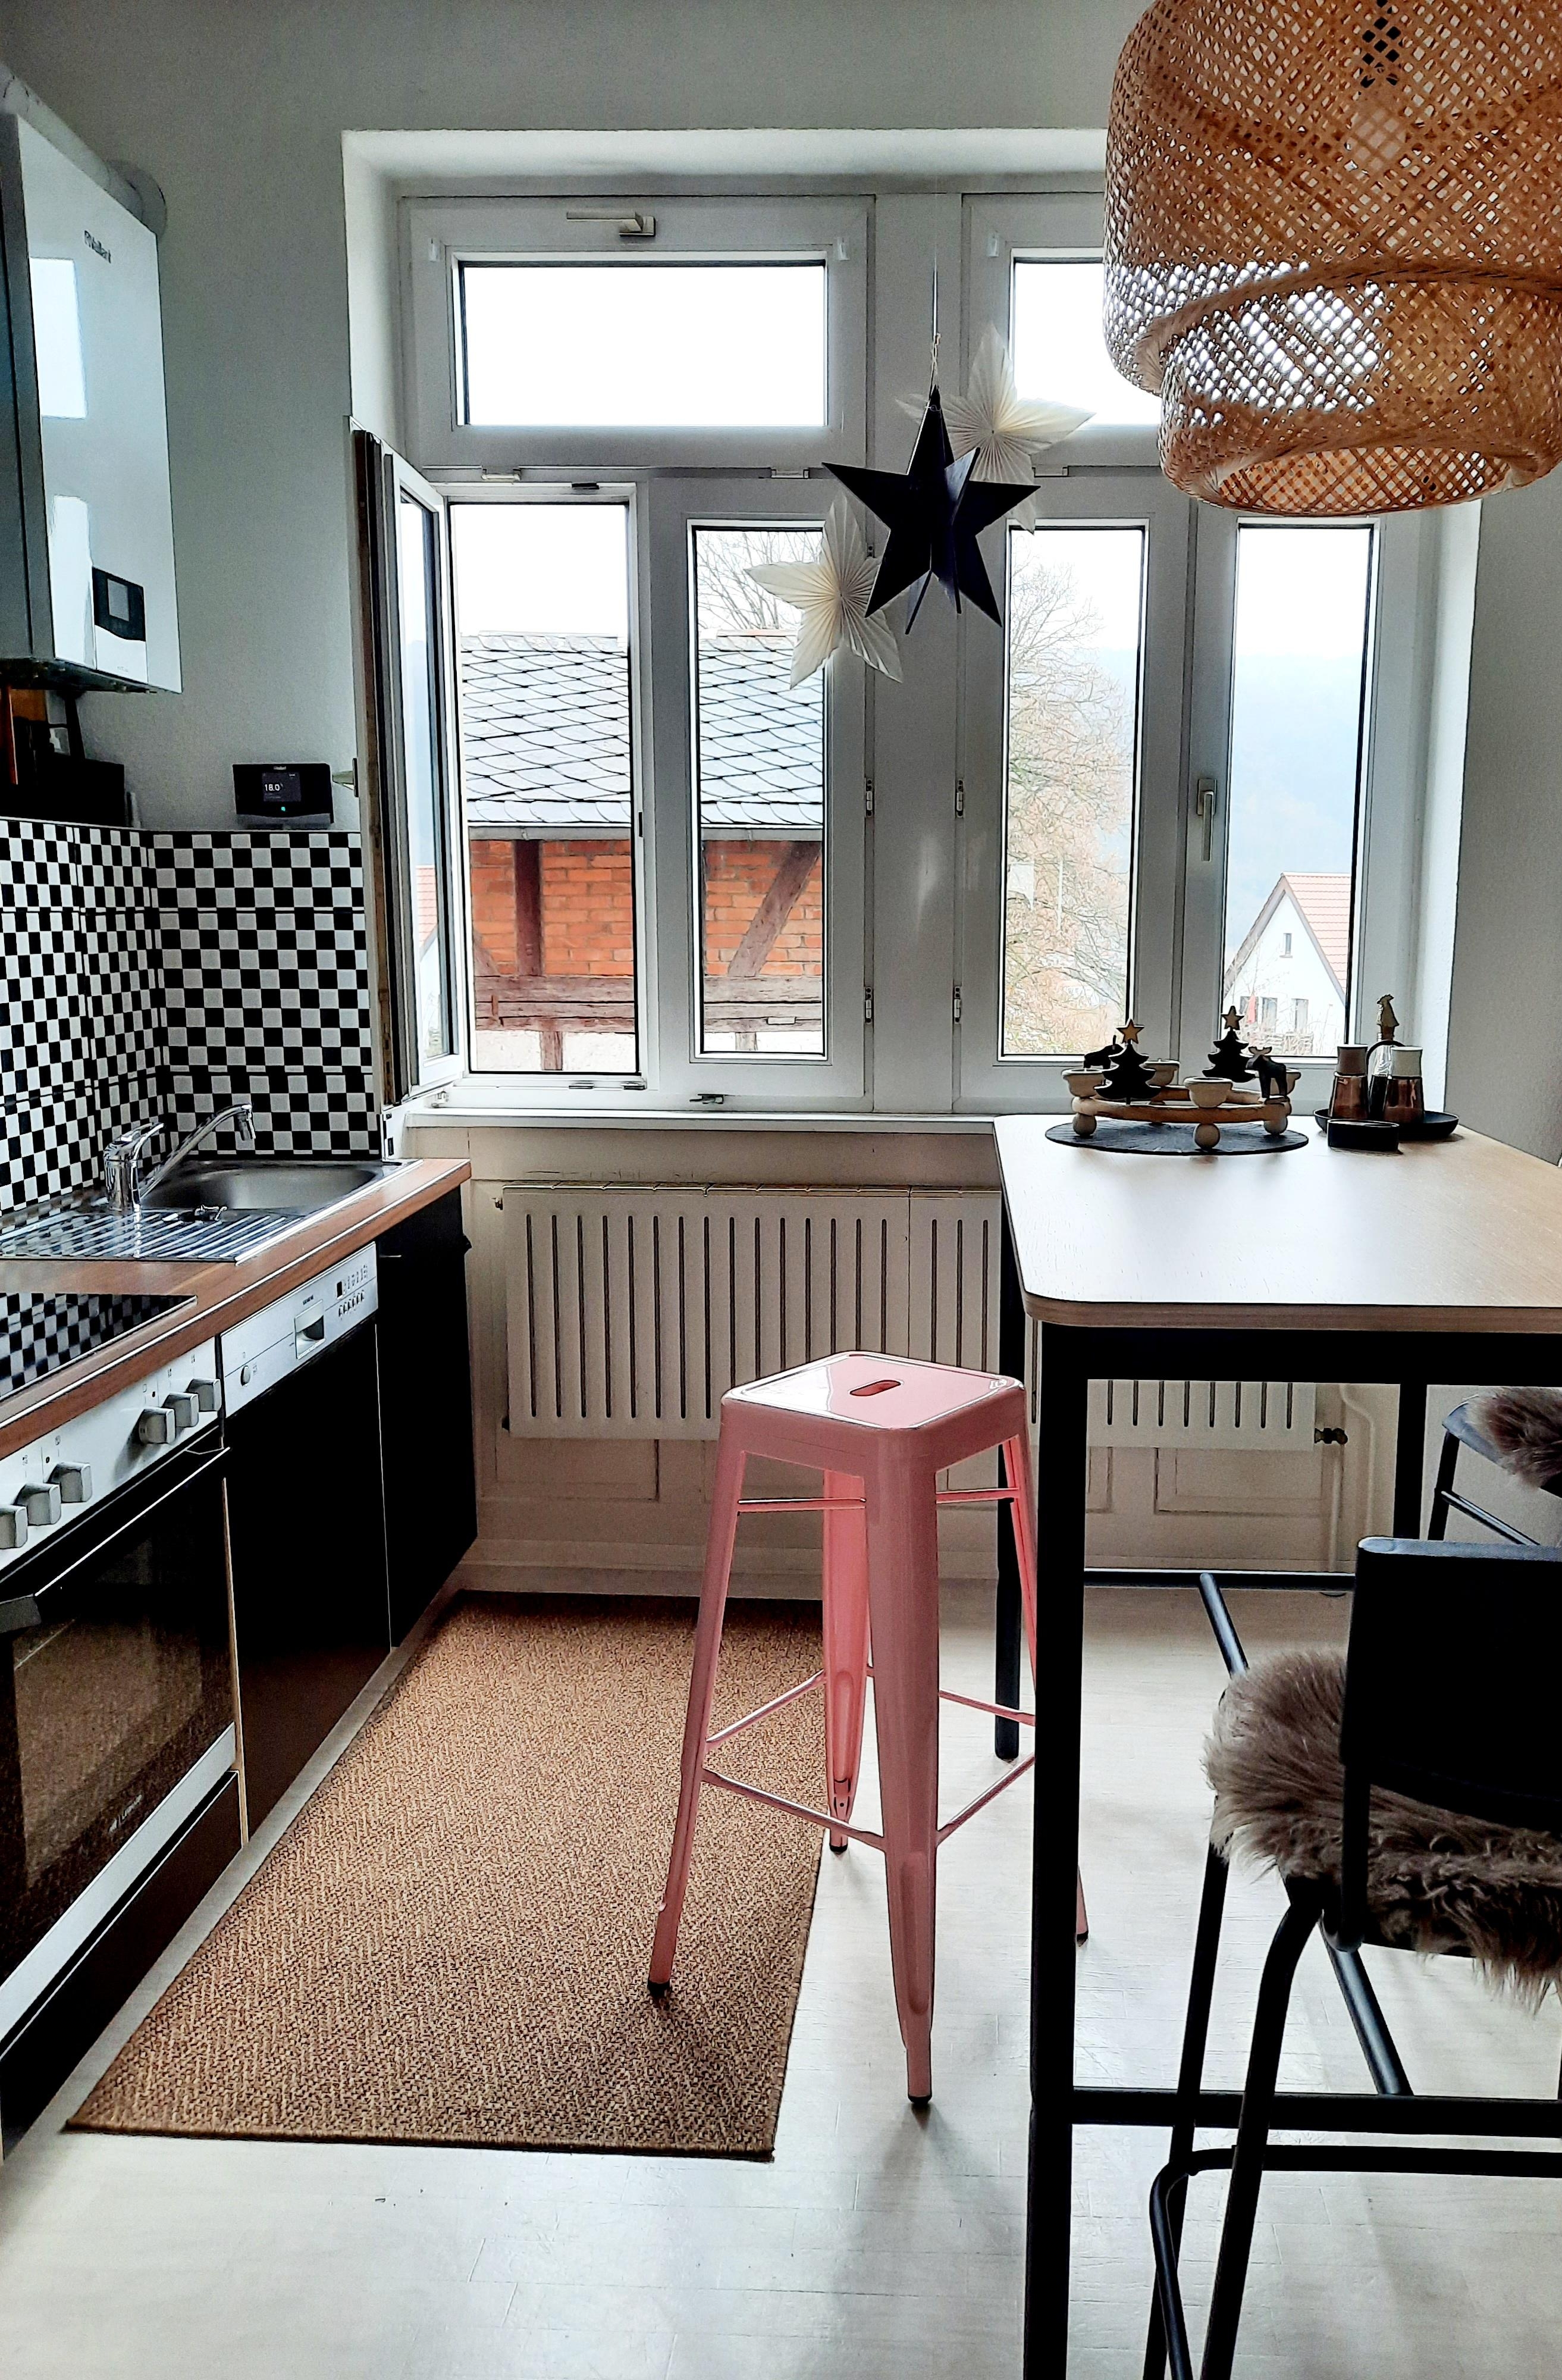 #küche #barhocker #colourful #rosa #iloveit #altbau #scandistyle #scandinavianliving #retro #newinthehouse 